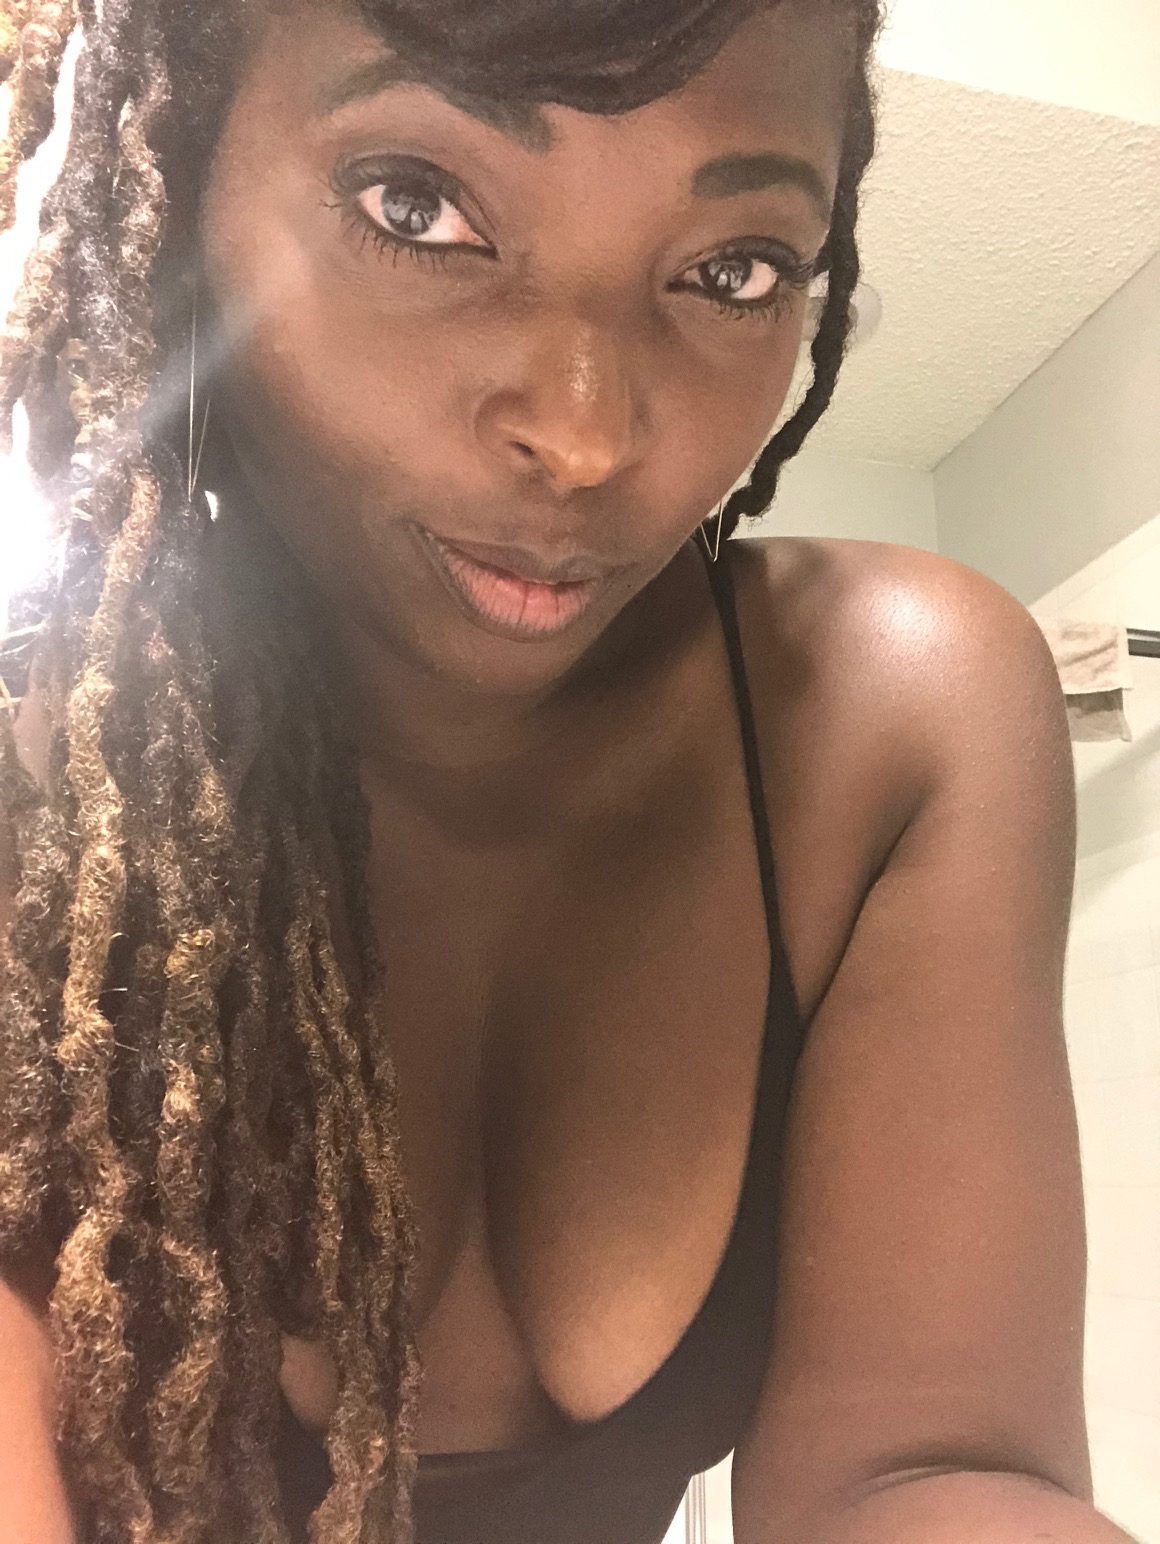 caroline calhoun share real black women sex photos